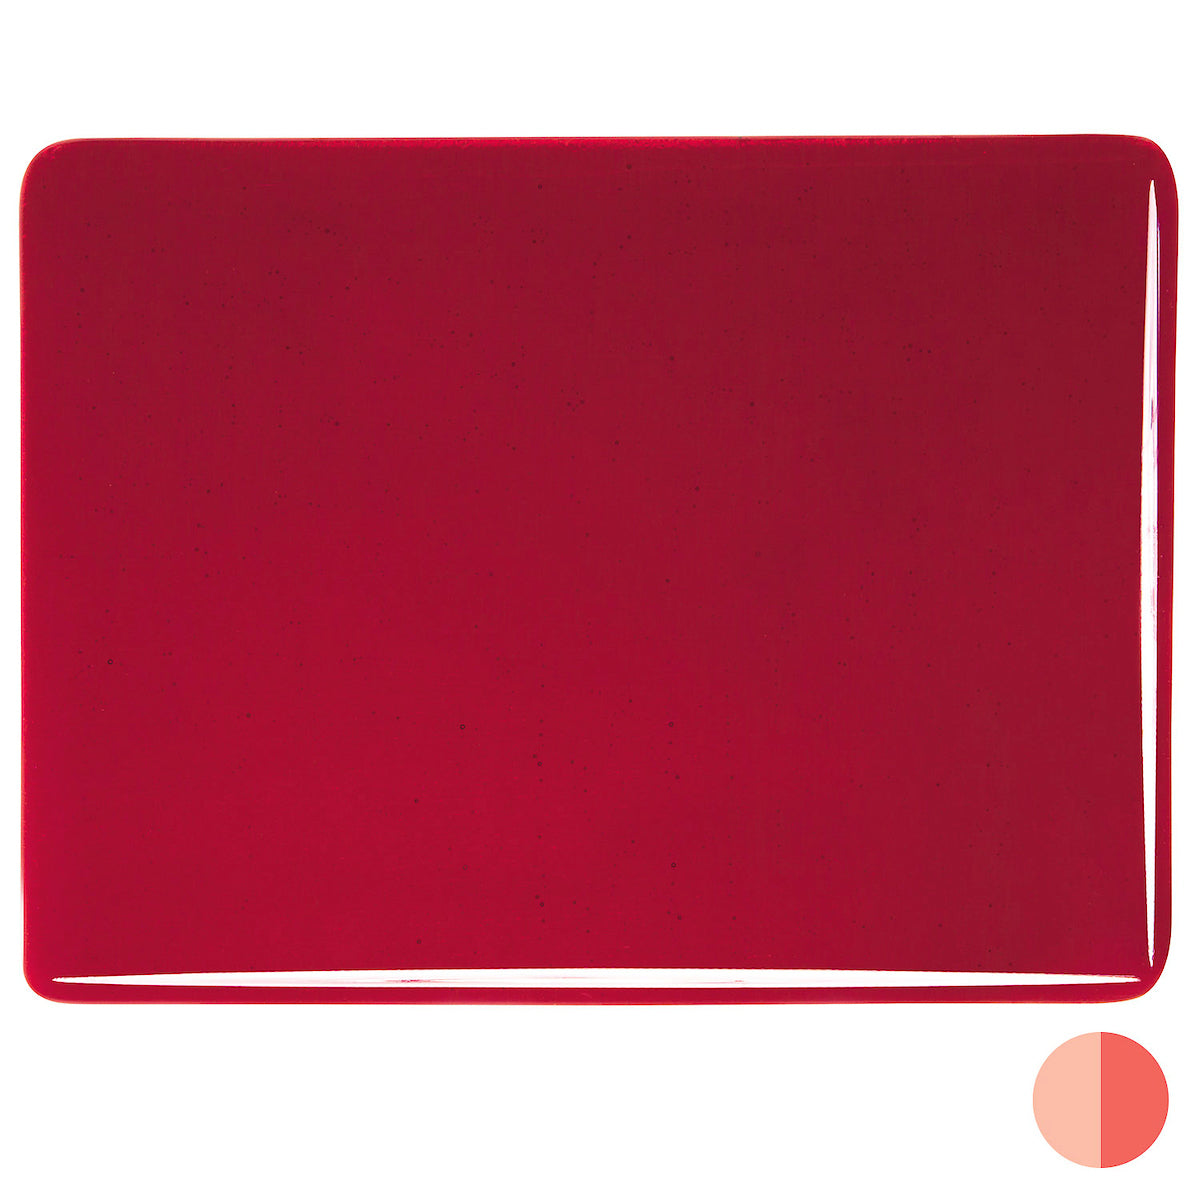 Garnet Red, 3 mm